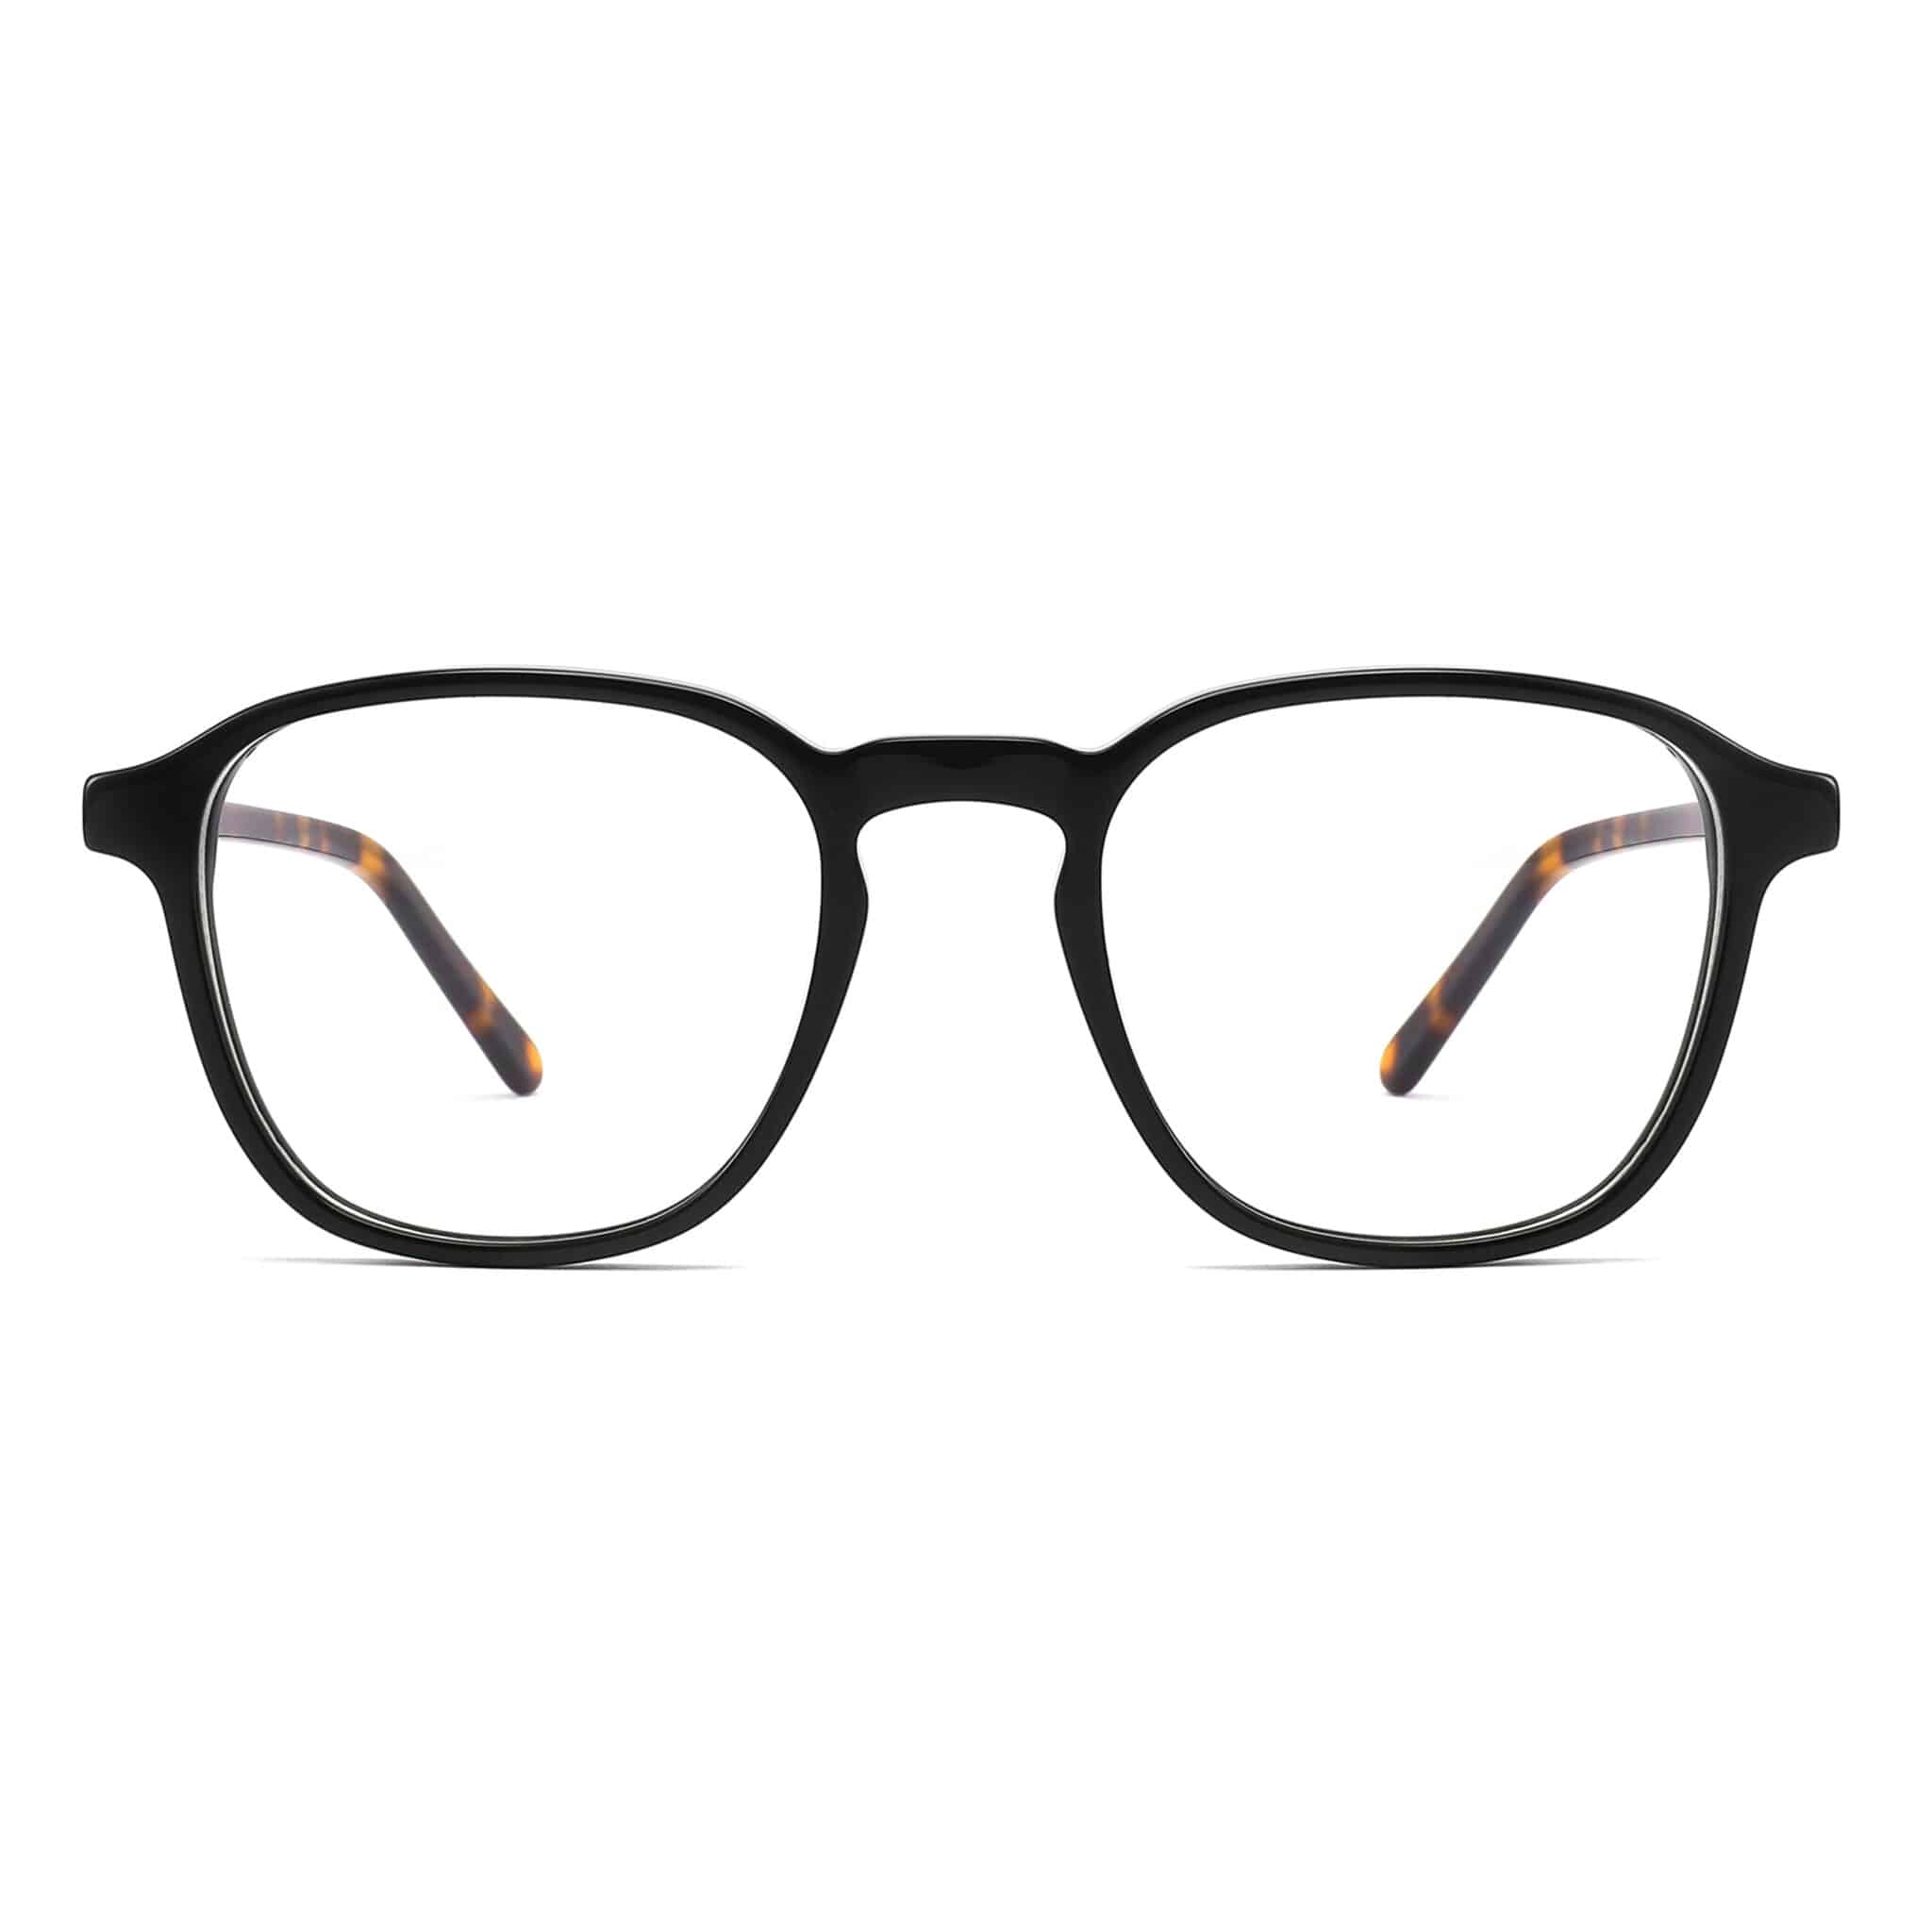 Acetate Full-Rim Design Eyeglasses